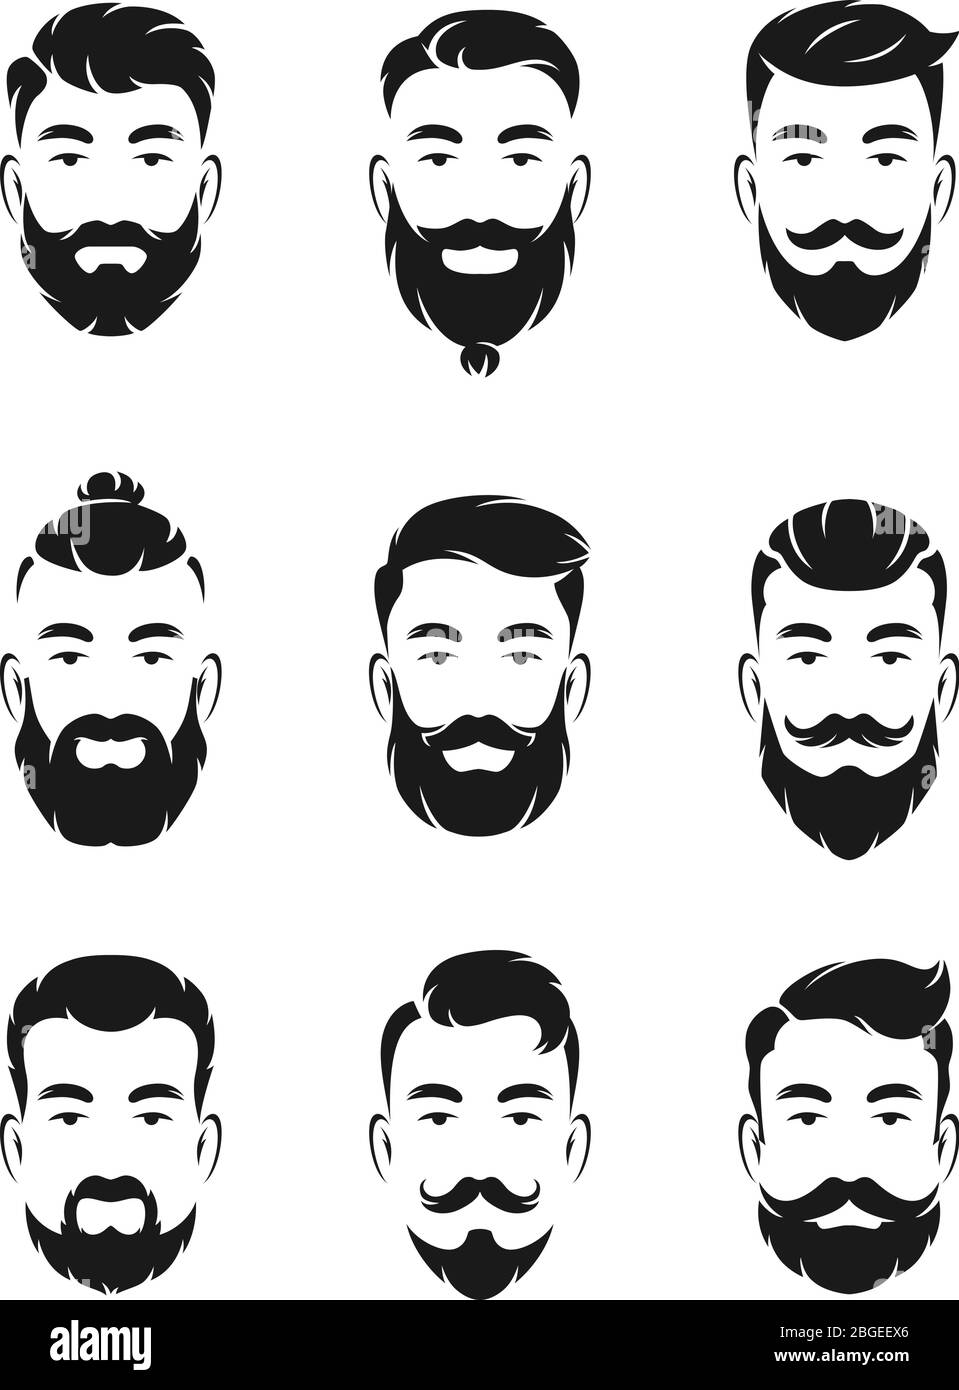 Monochrome Avatarsysteme aus Hipster-Porträts und Gesichtselementen. Mann Schnurrbart, Bart Stock Vektor